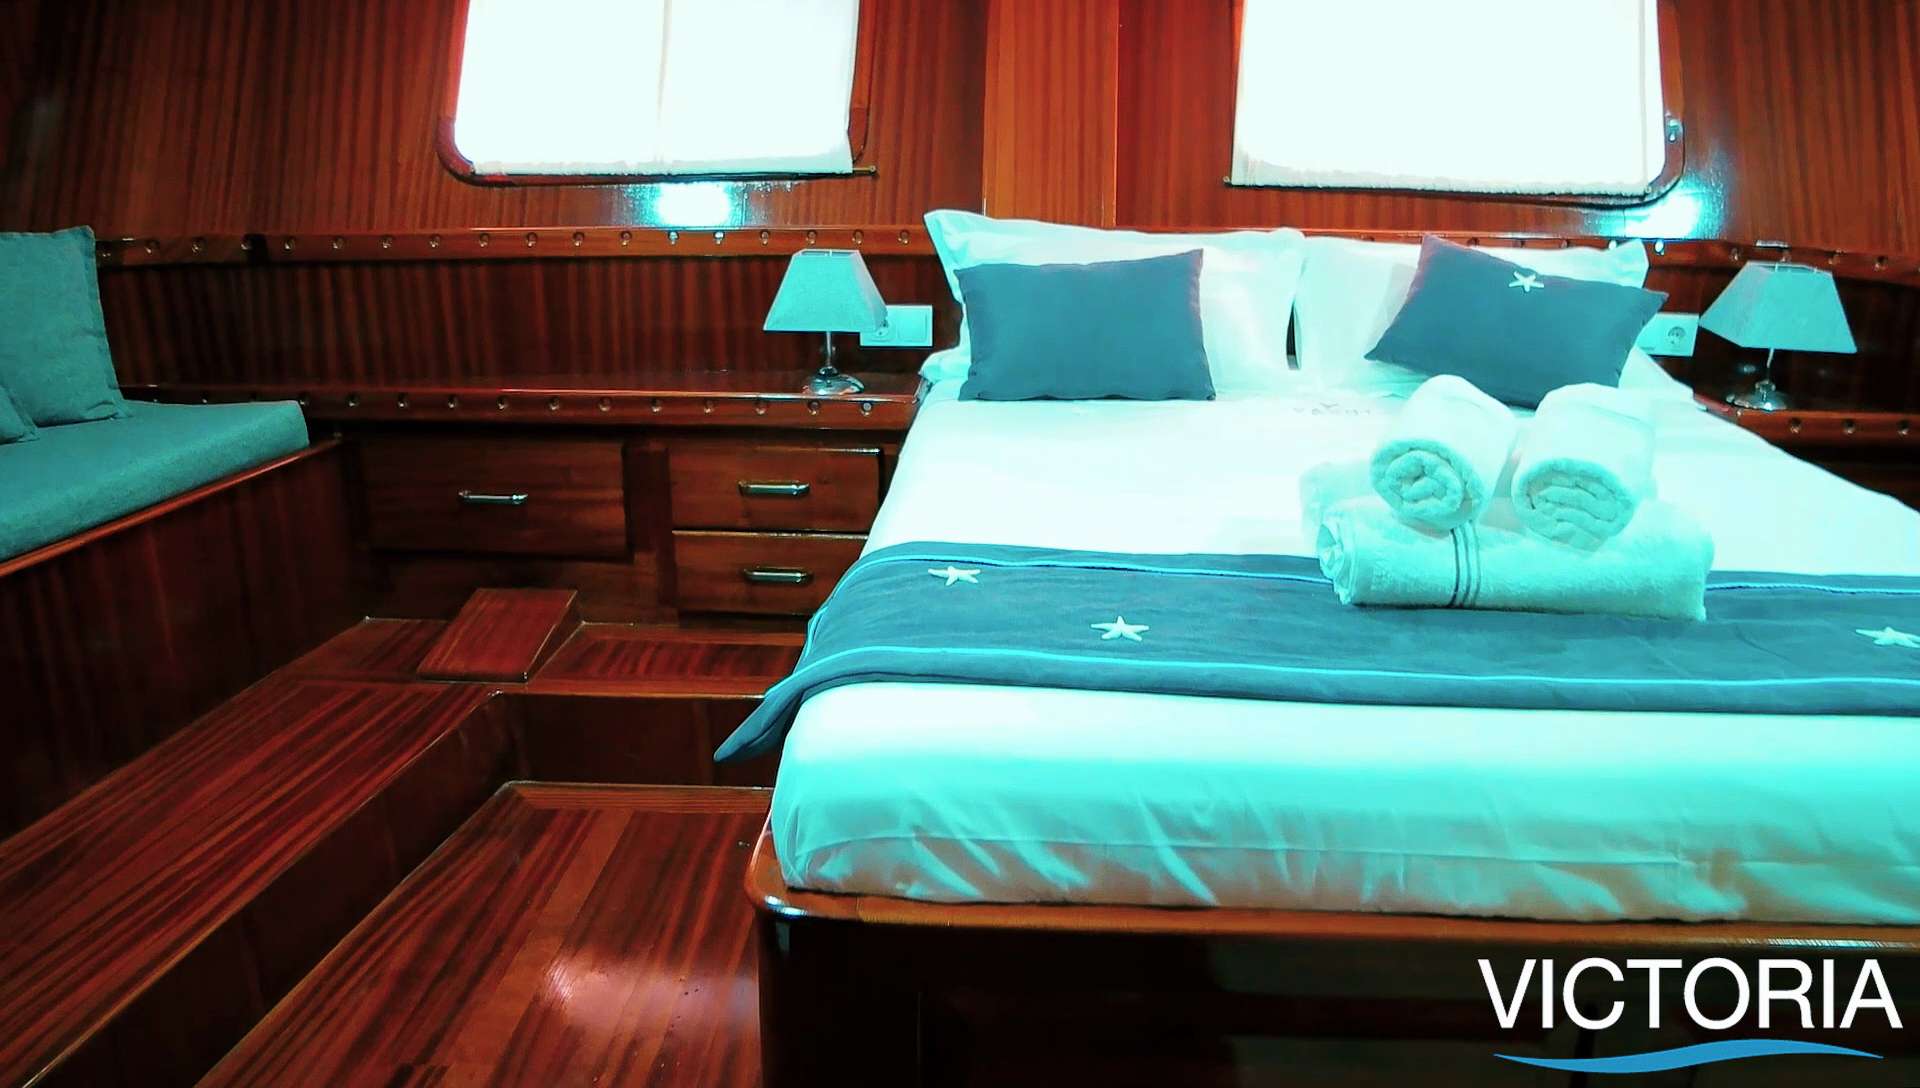 victoria - Yacht Charter Monaco & Boat hire in Fr. Riviera, Corsica & Sardinia 6